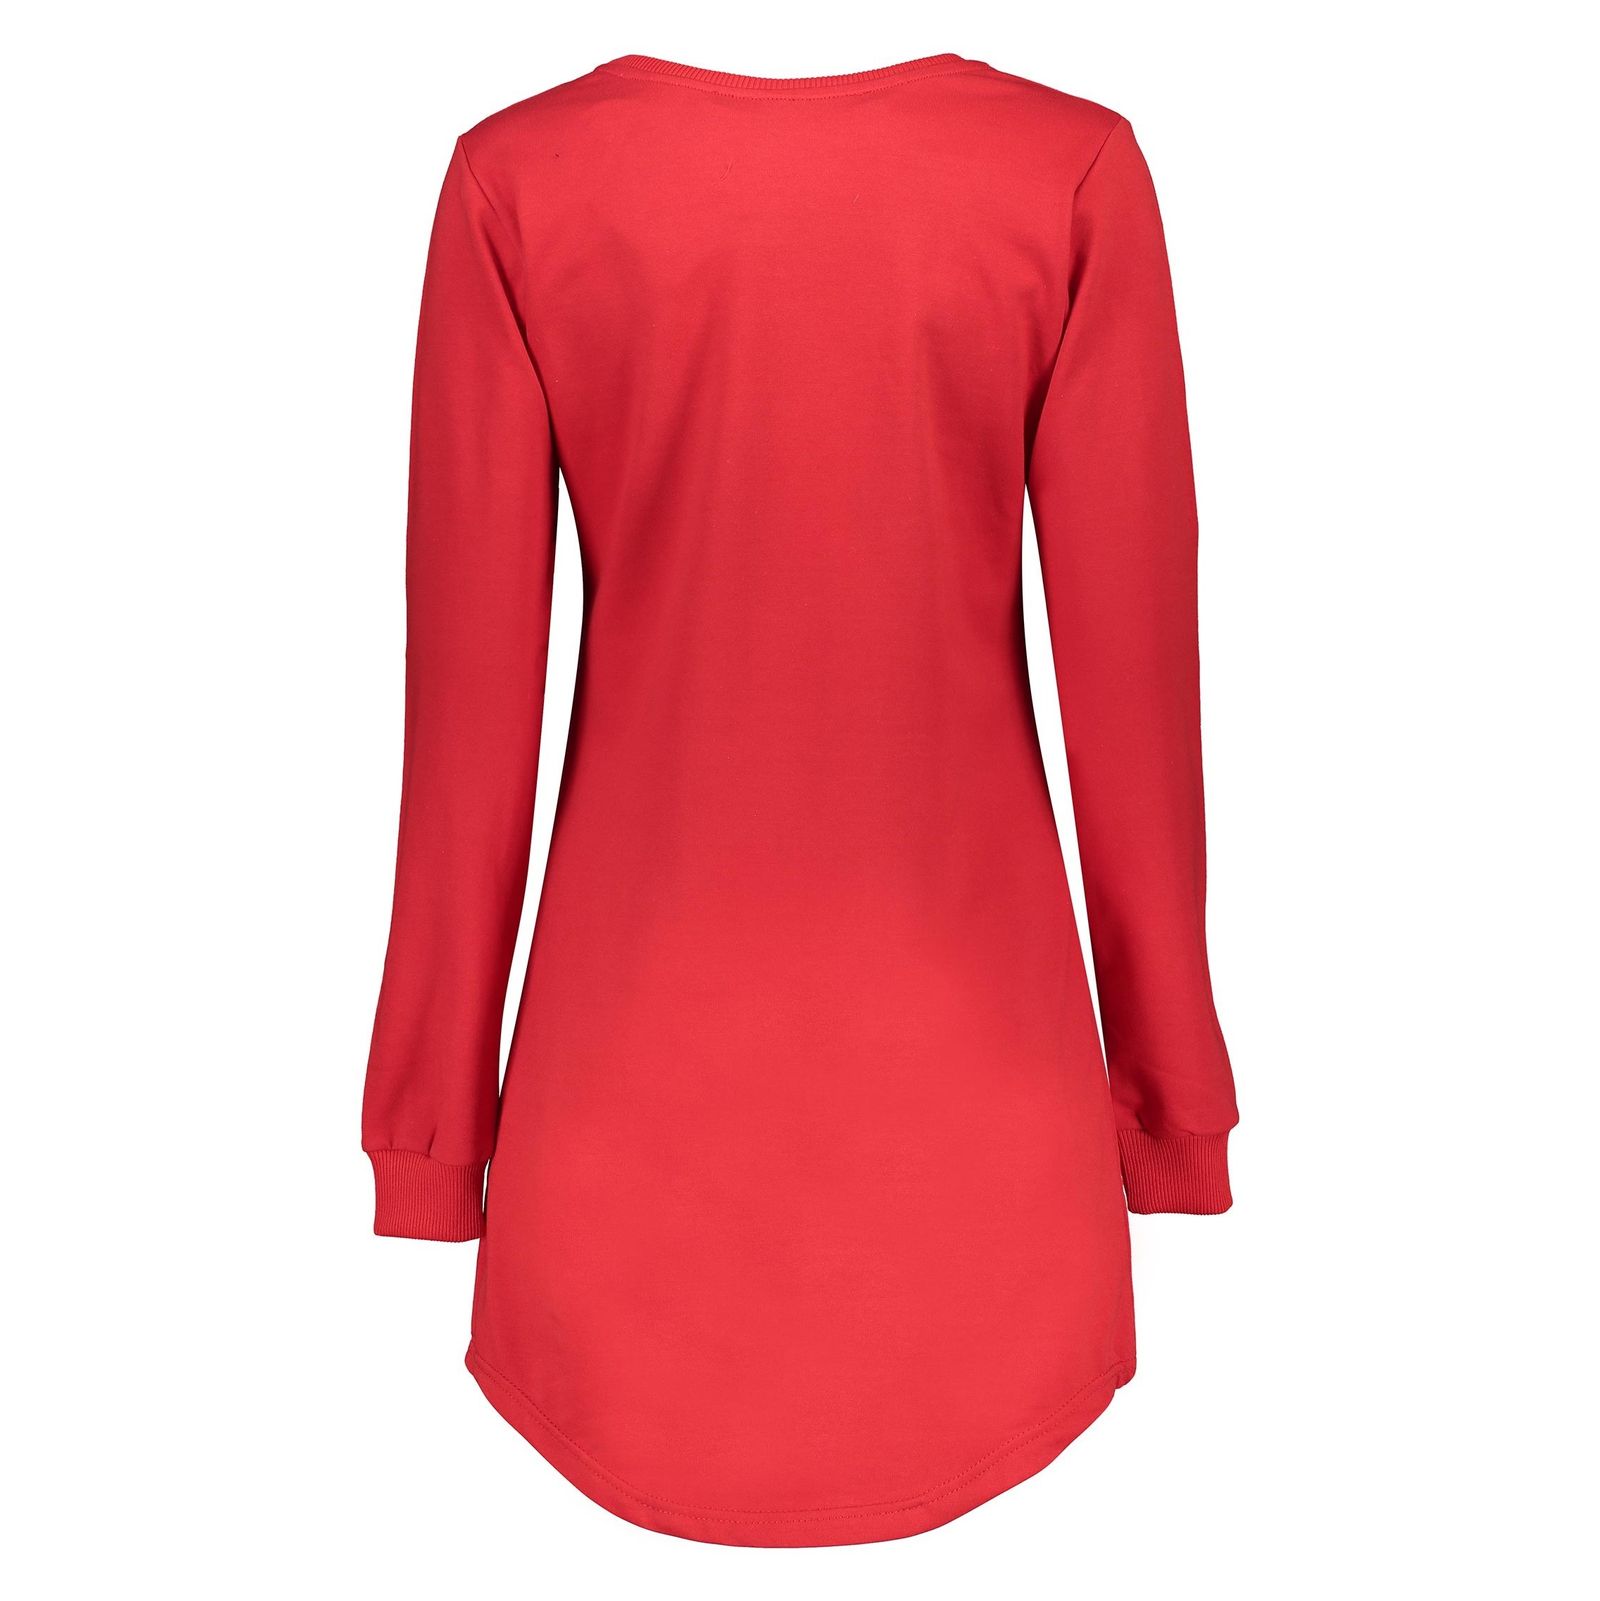 پیراهن کوتاه زنانه - تچر - قرمز - 3